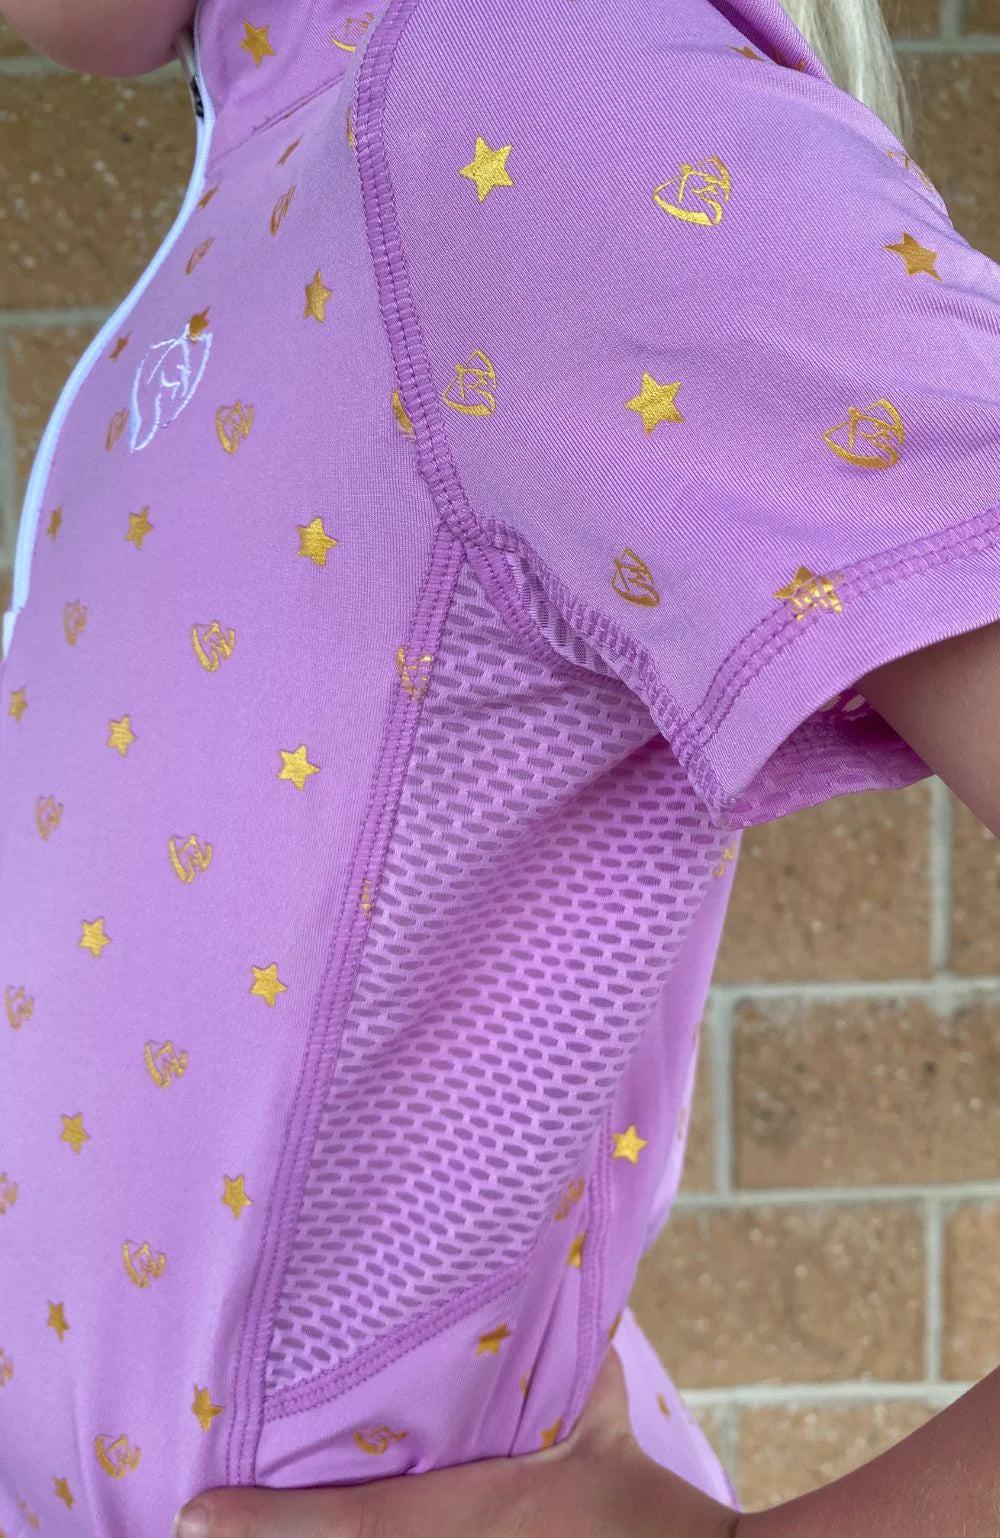 BARE Babes Quarter Zip Shirt - Pink Star Dust